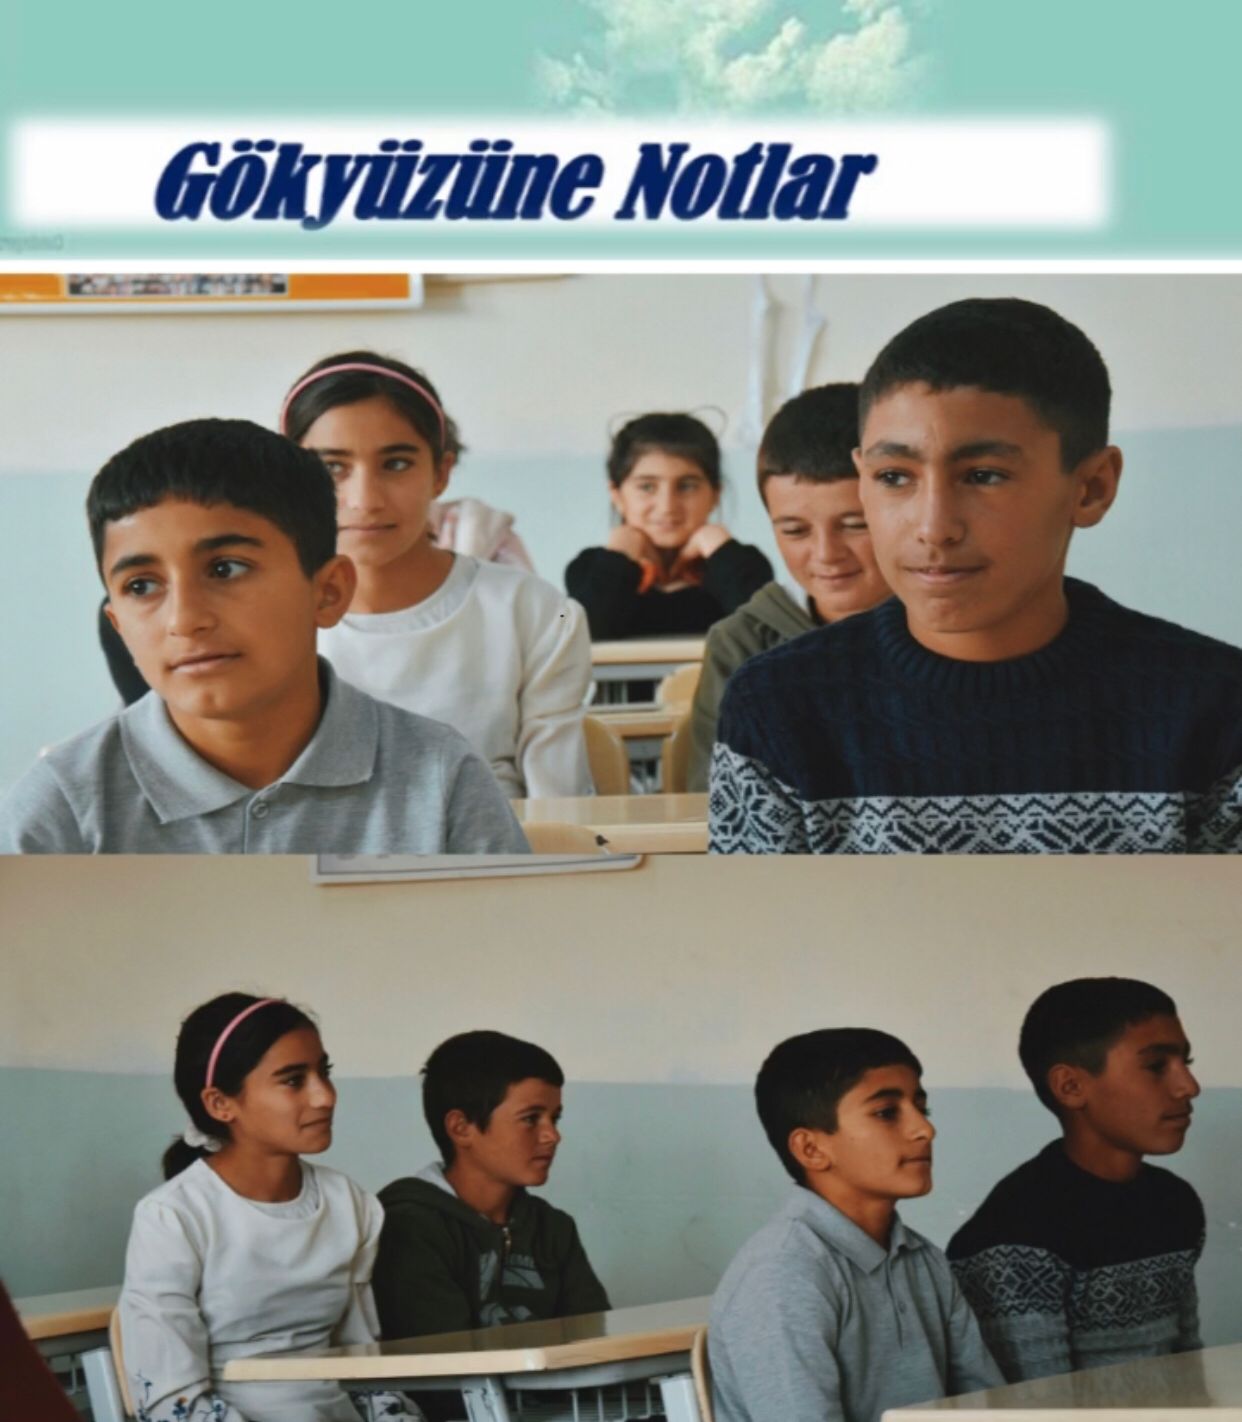 Erzurum Karayazı ilçesi Değirmenkaya köyünde Gökyüzüne Notlar kısa filmi çekildi